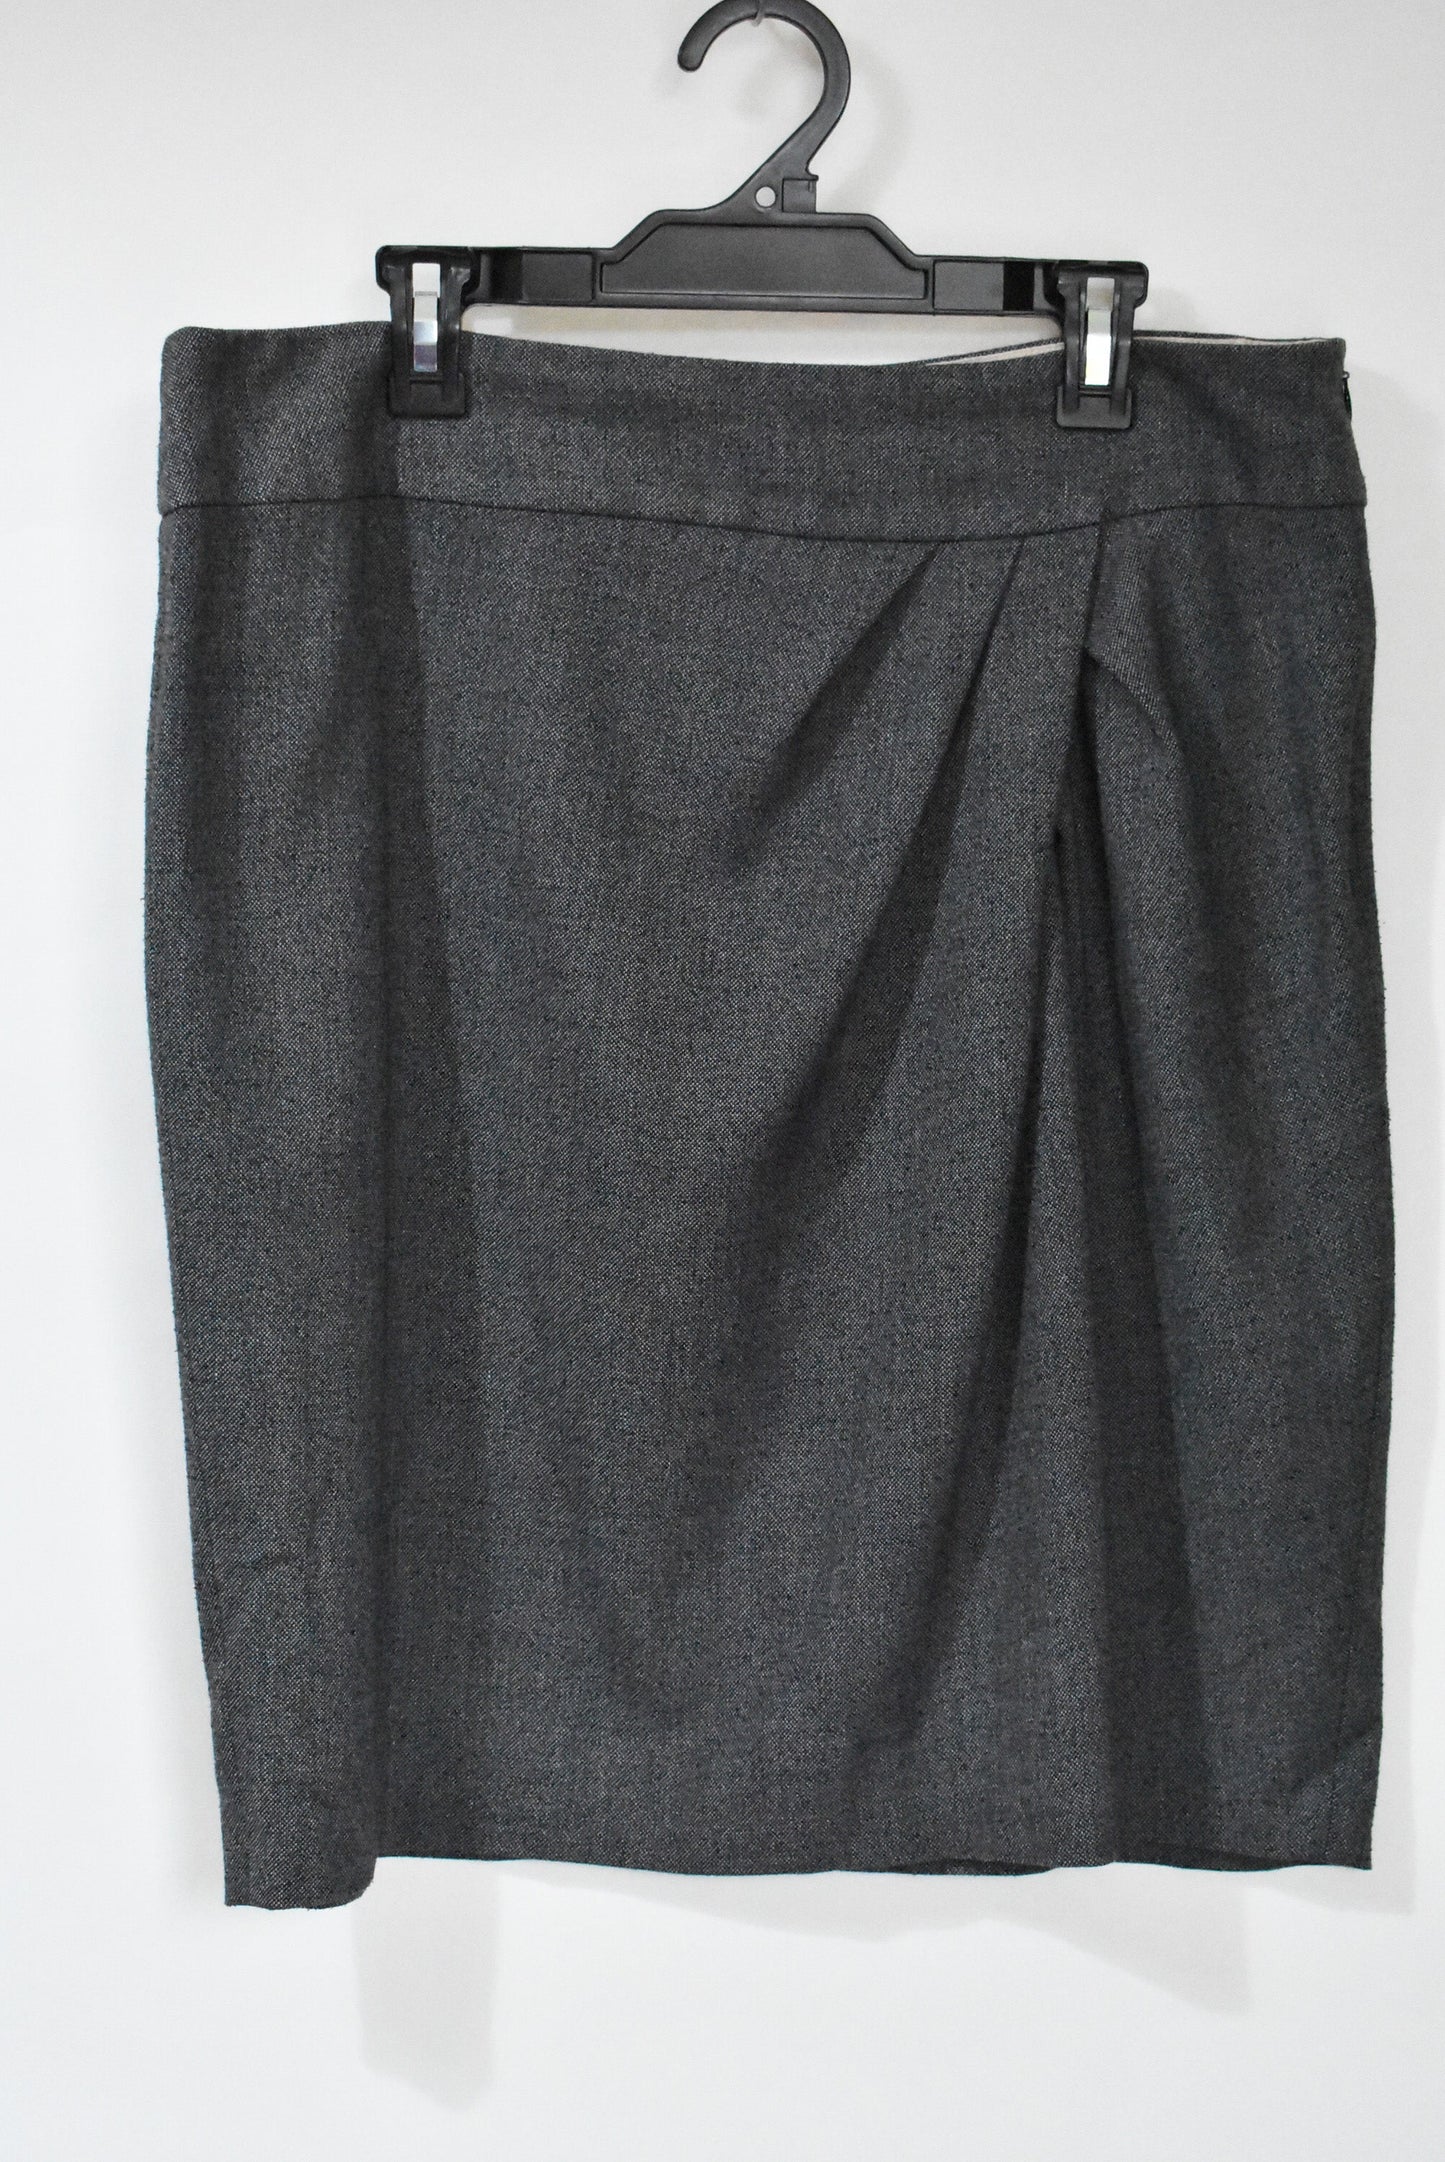 Kaliko grey skirt, 16